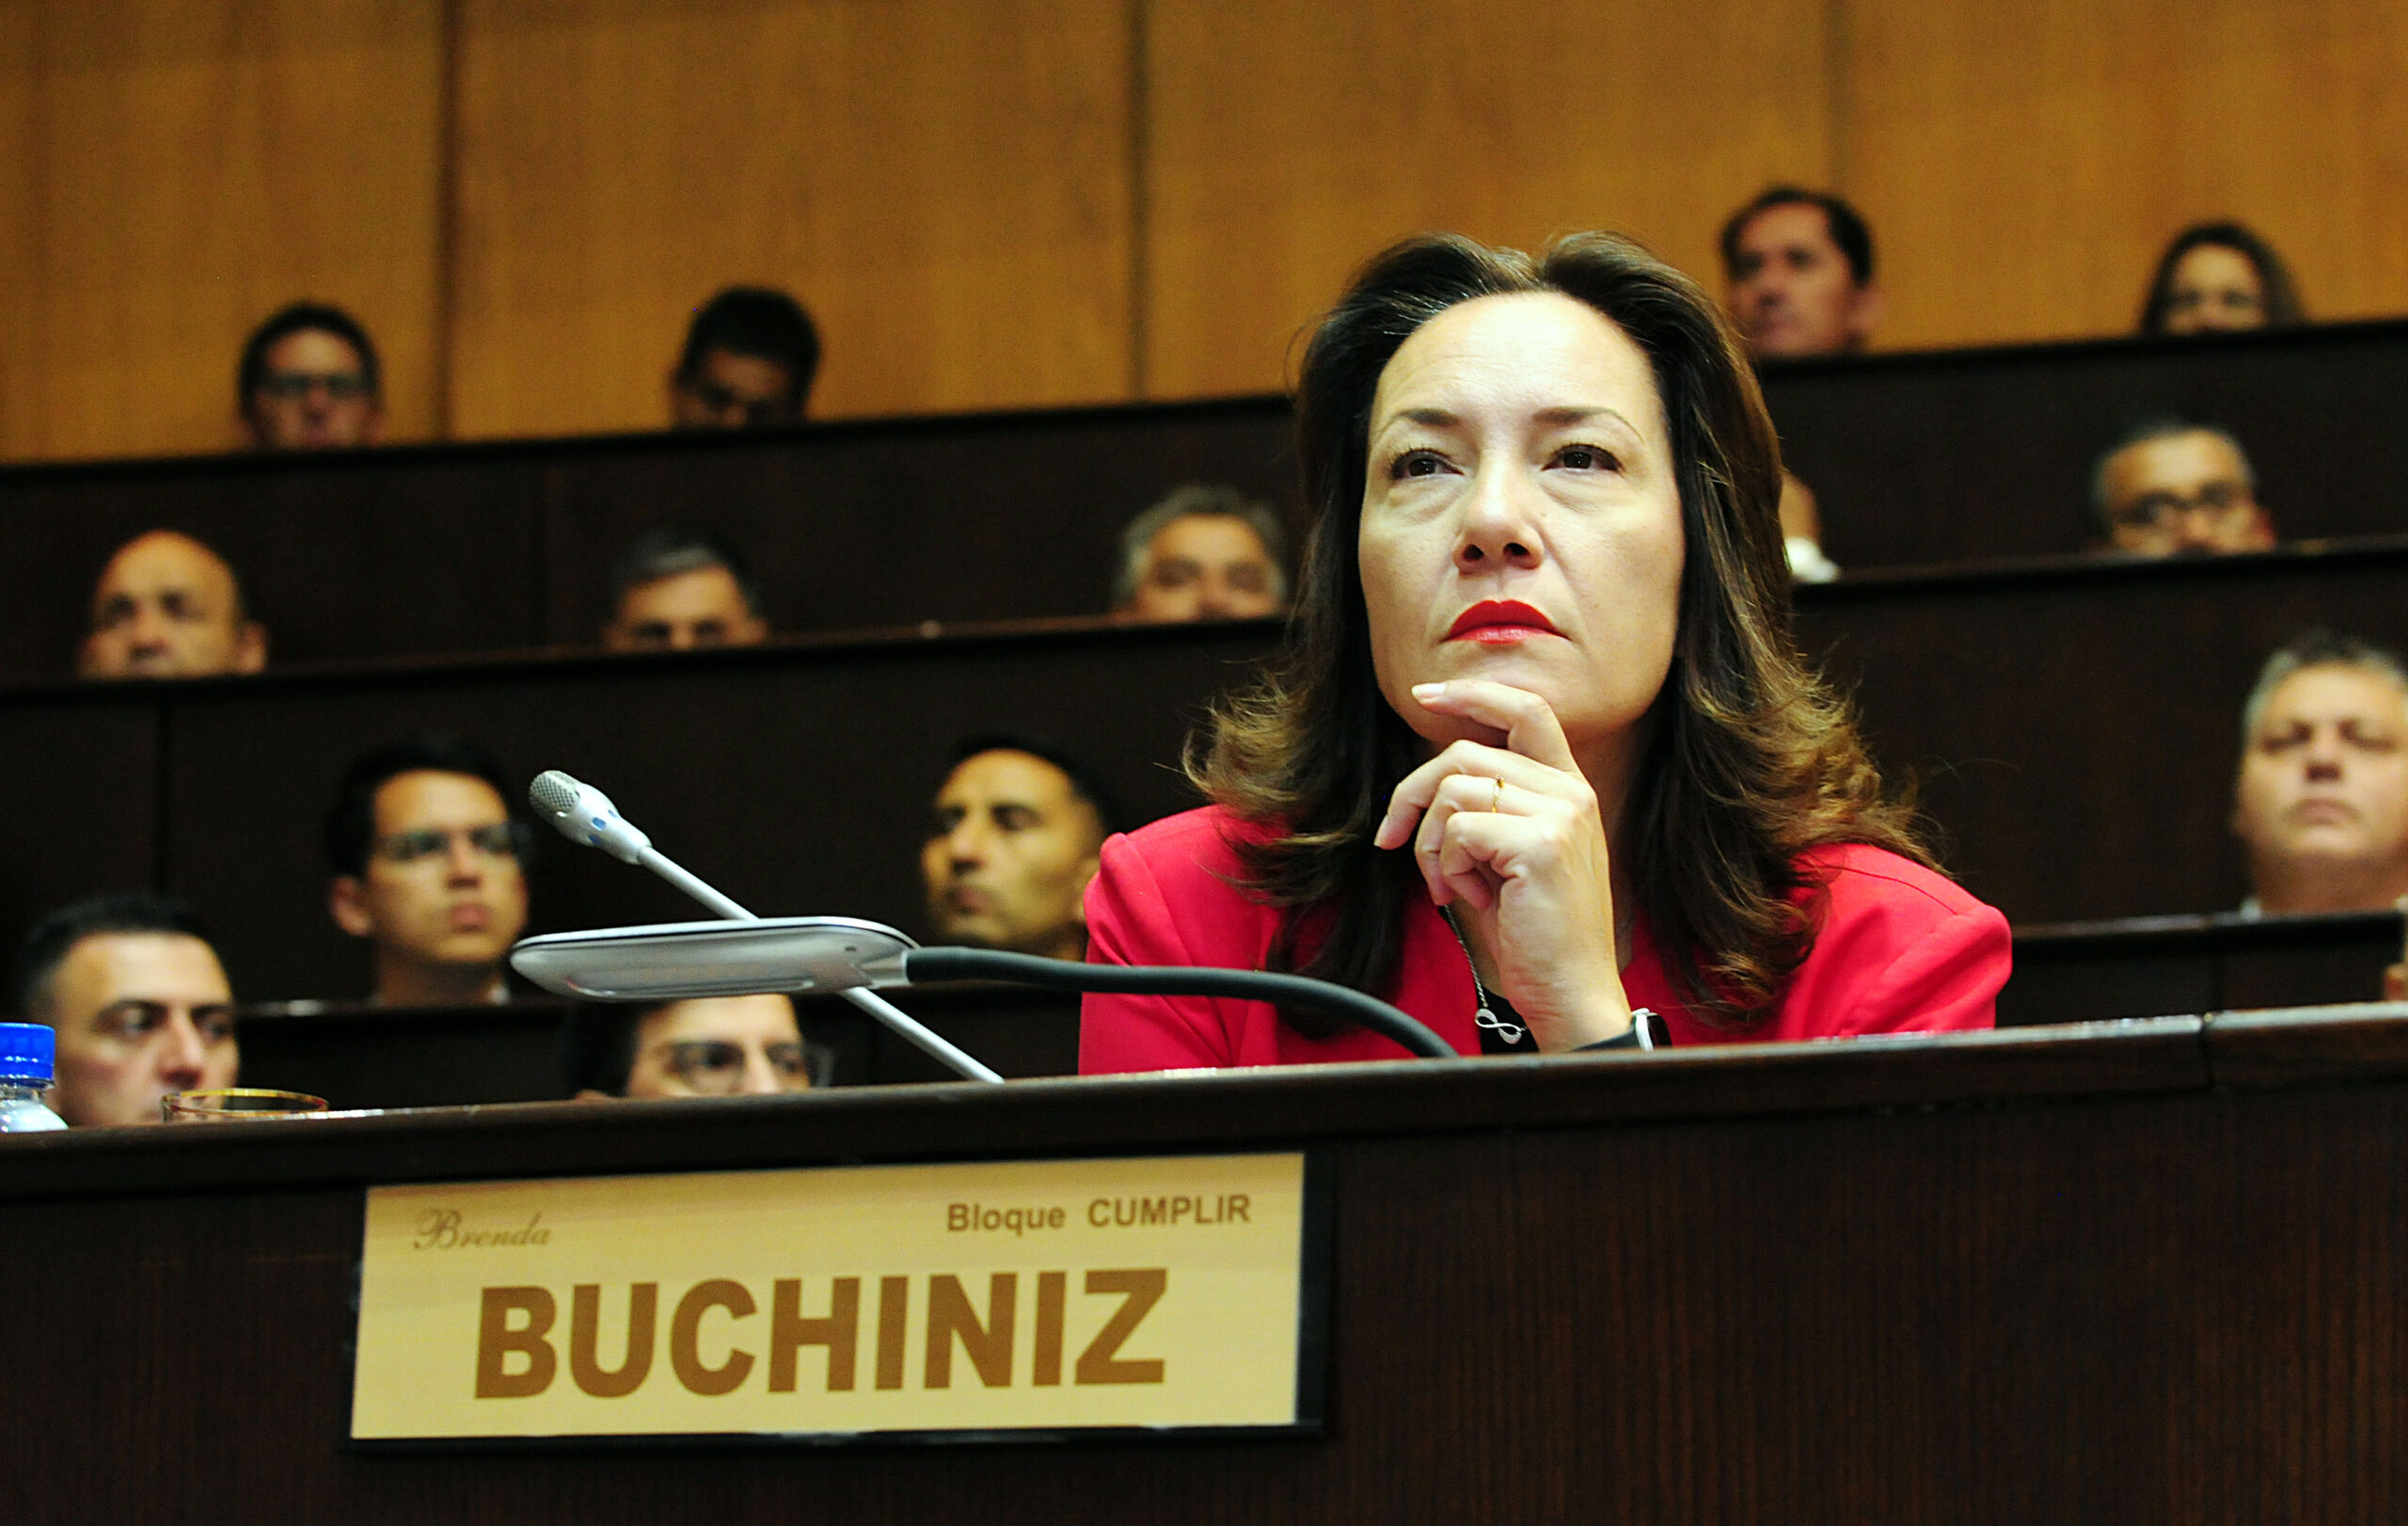 Quieren echar a la diputada Buchiniz de la Legislatura